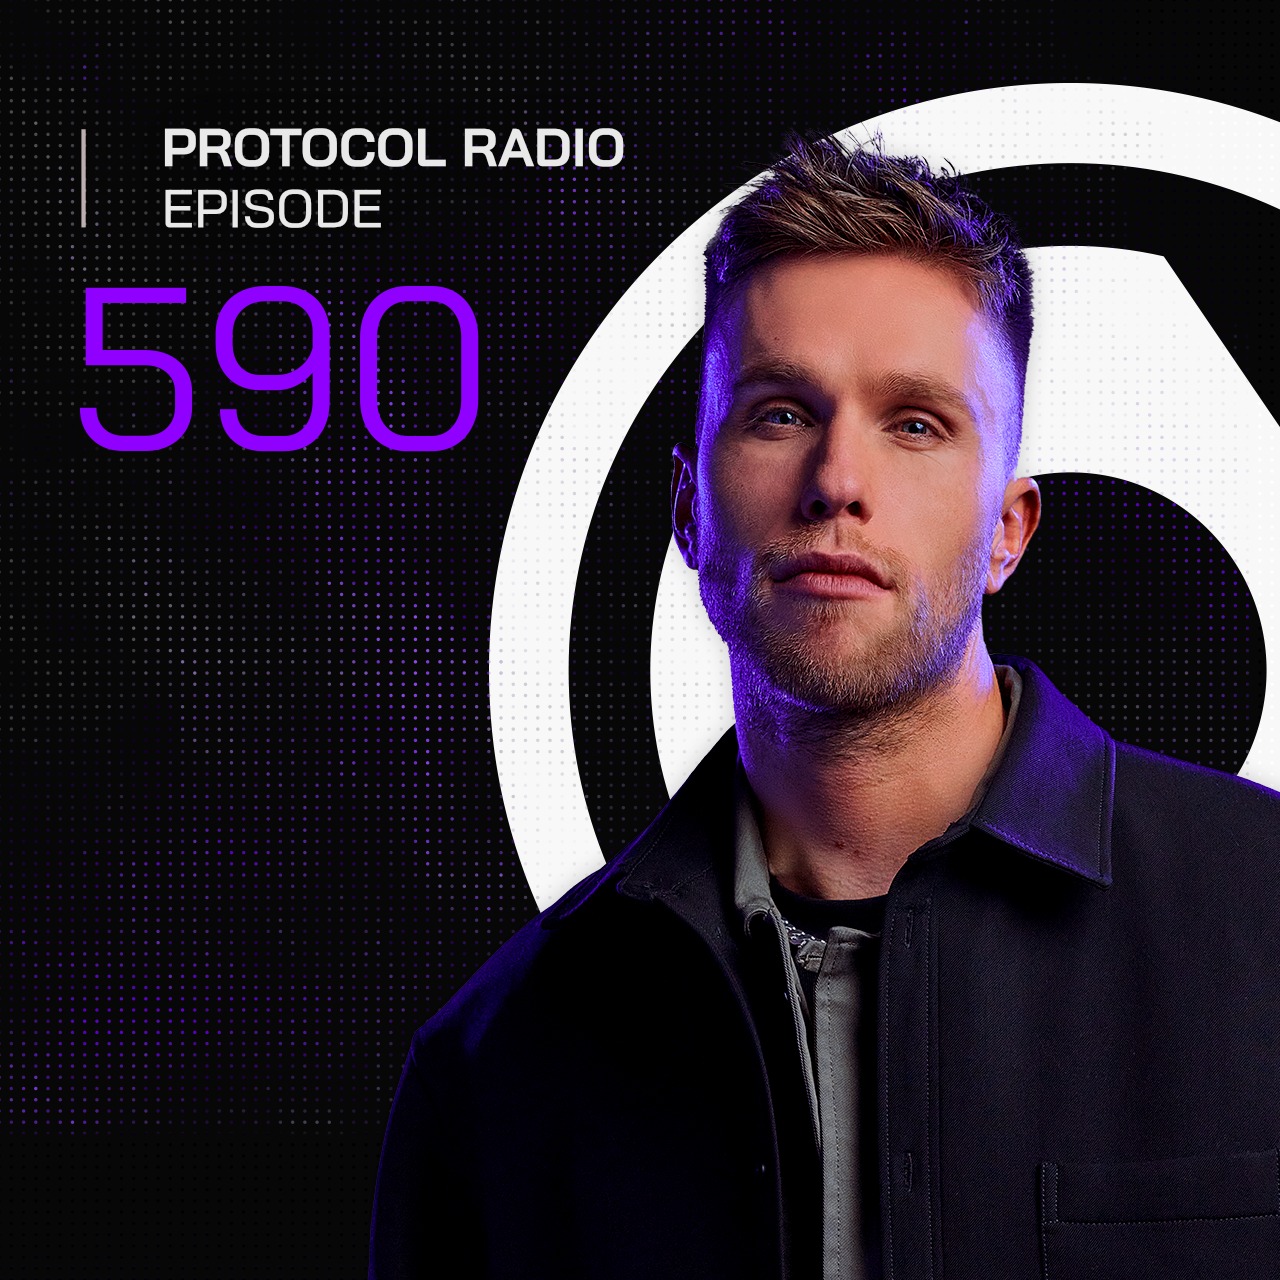 Protocol Radio #590